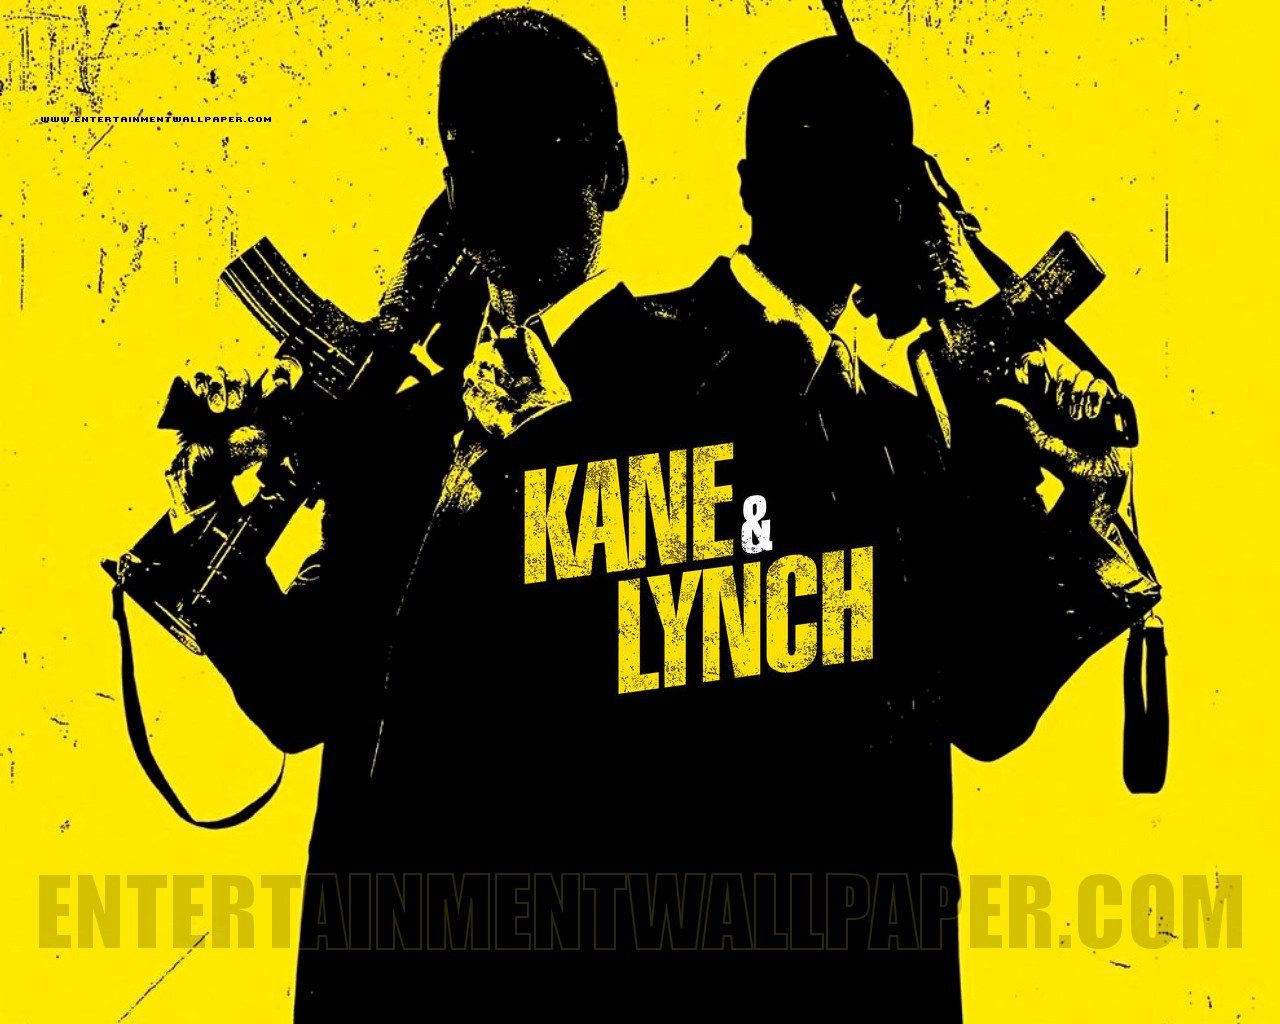  Kane & Lynch (2015) Poster 